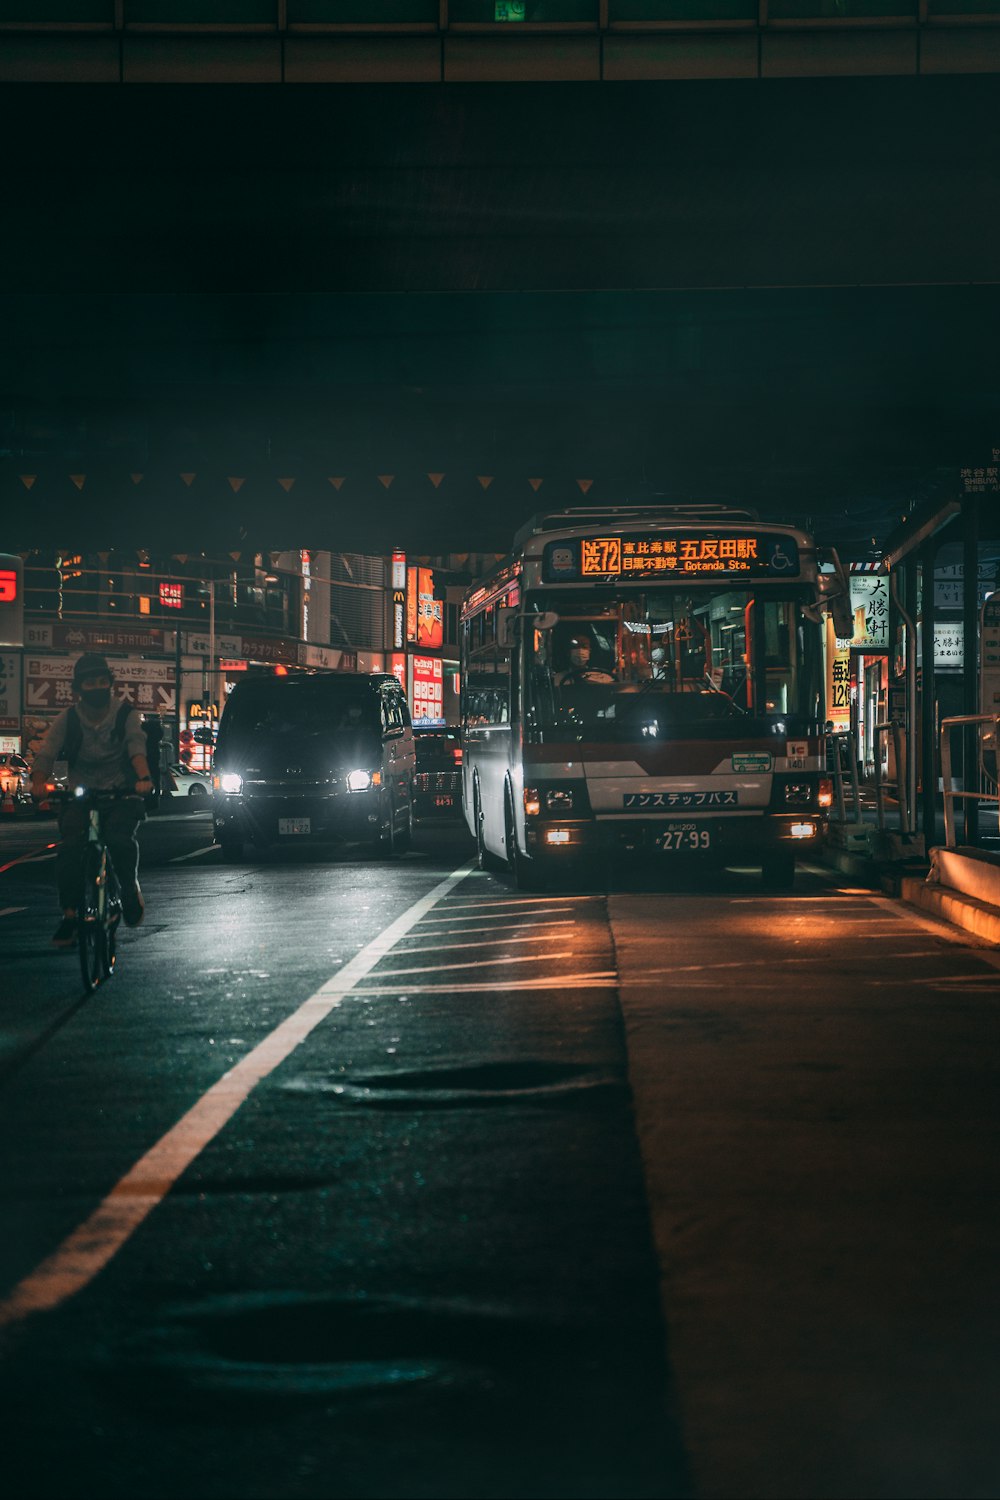 야간 도로에서 빨간색 이층 버스